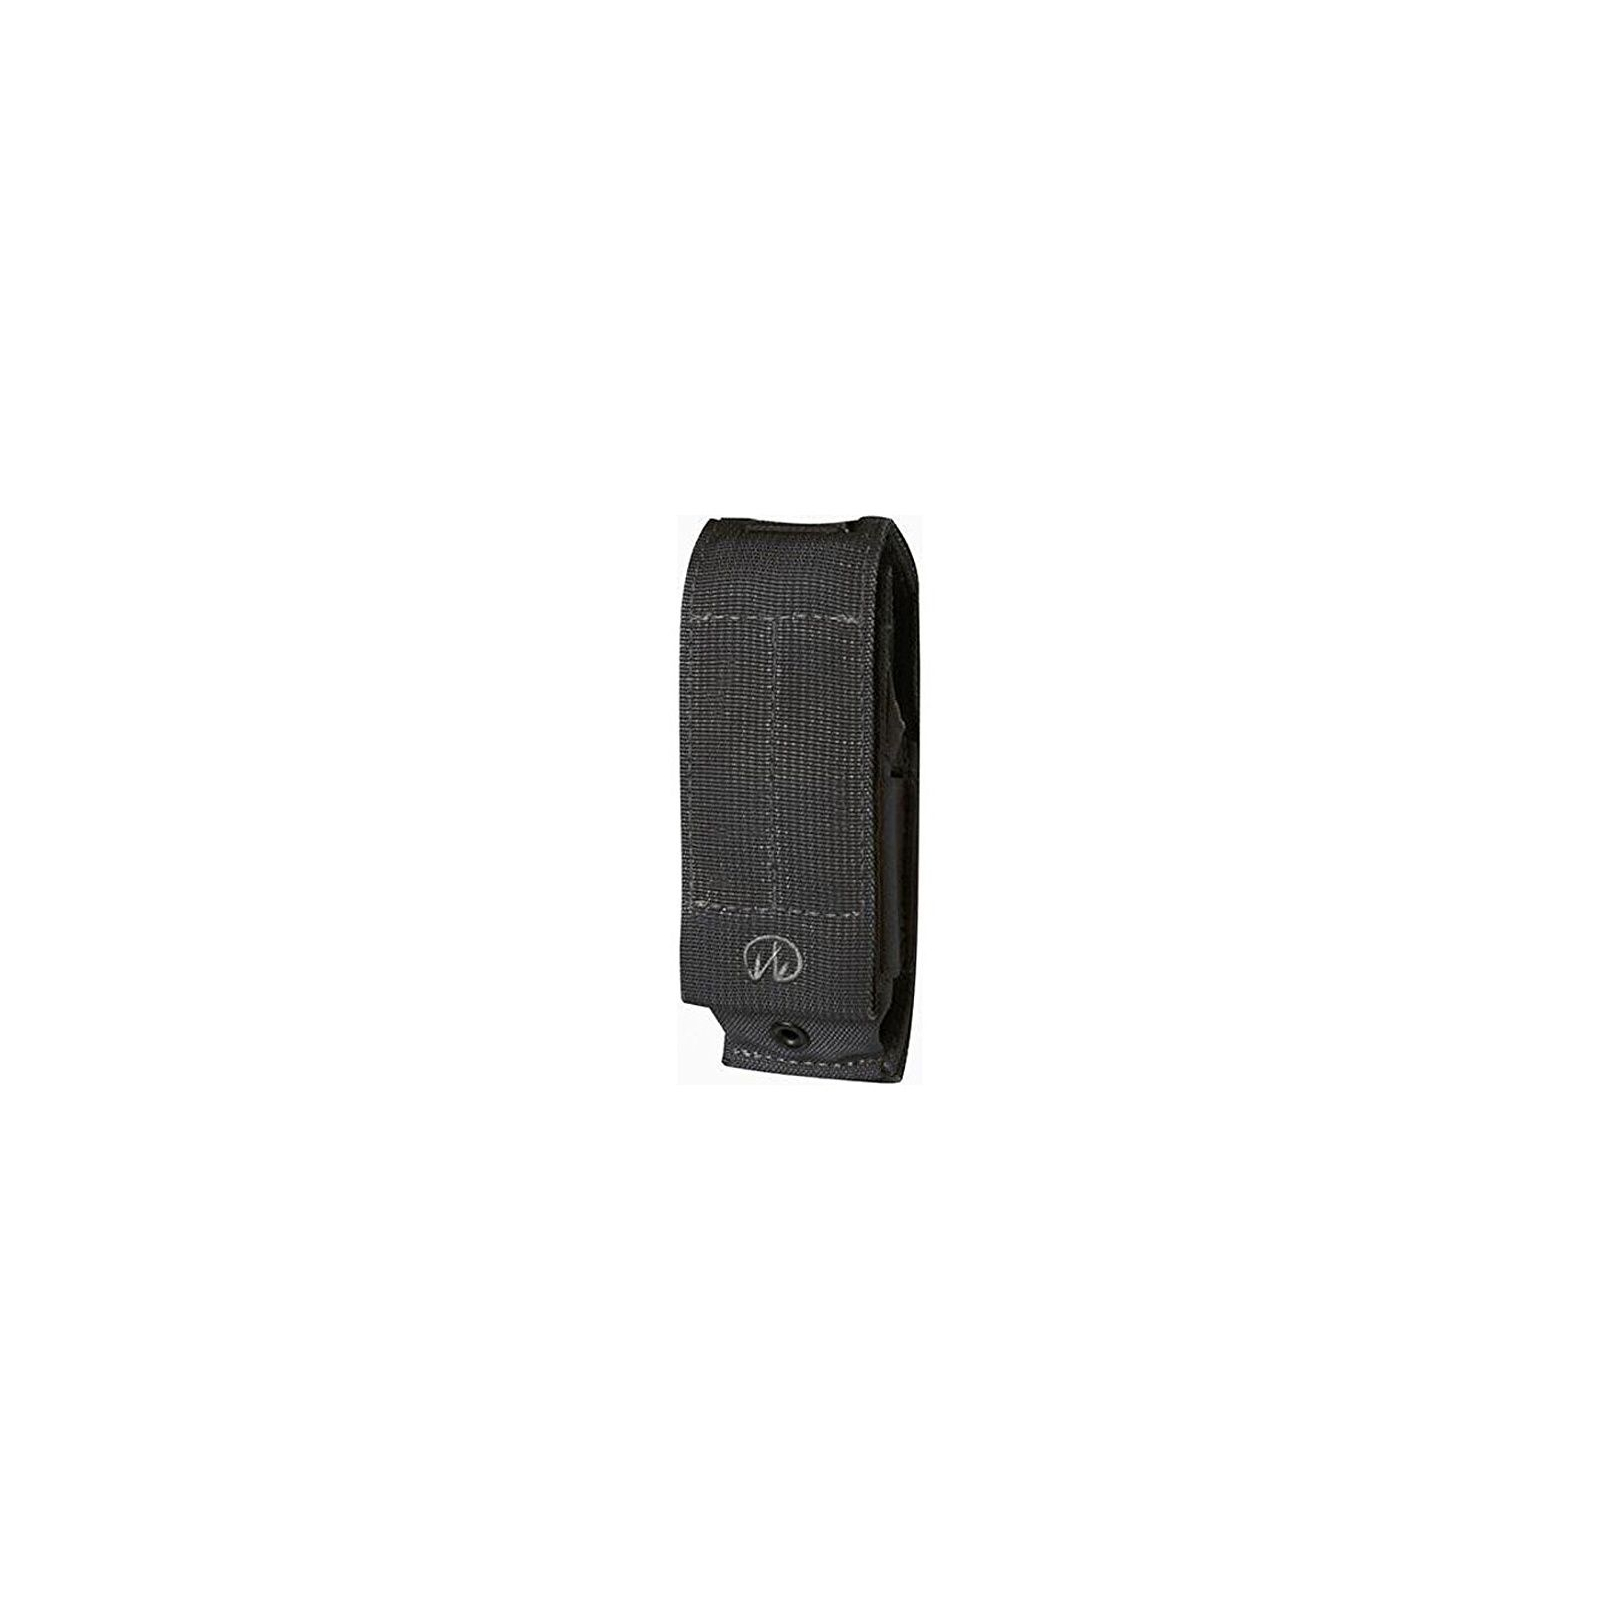 Чехол для мультитула Leatherman Molle 4.75" XL Black (930371)